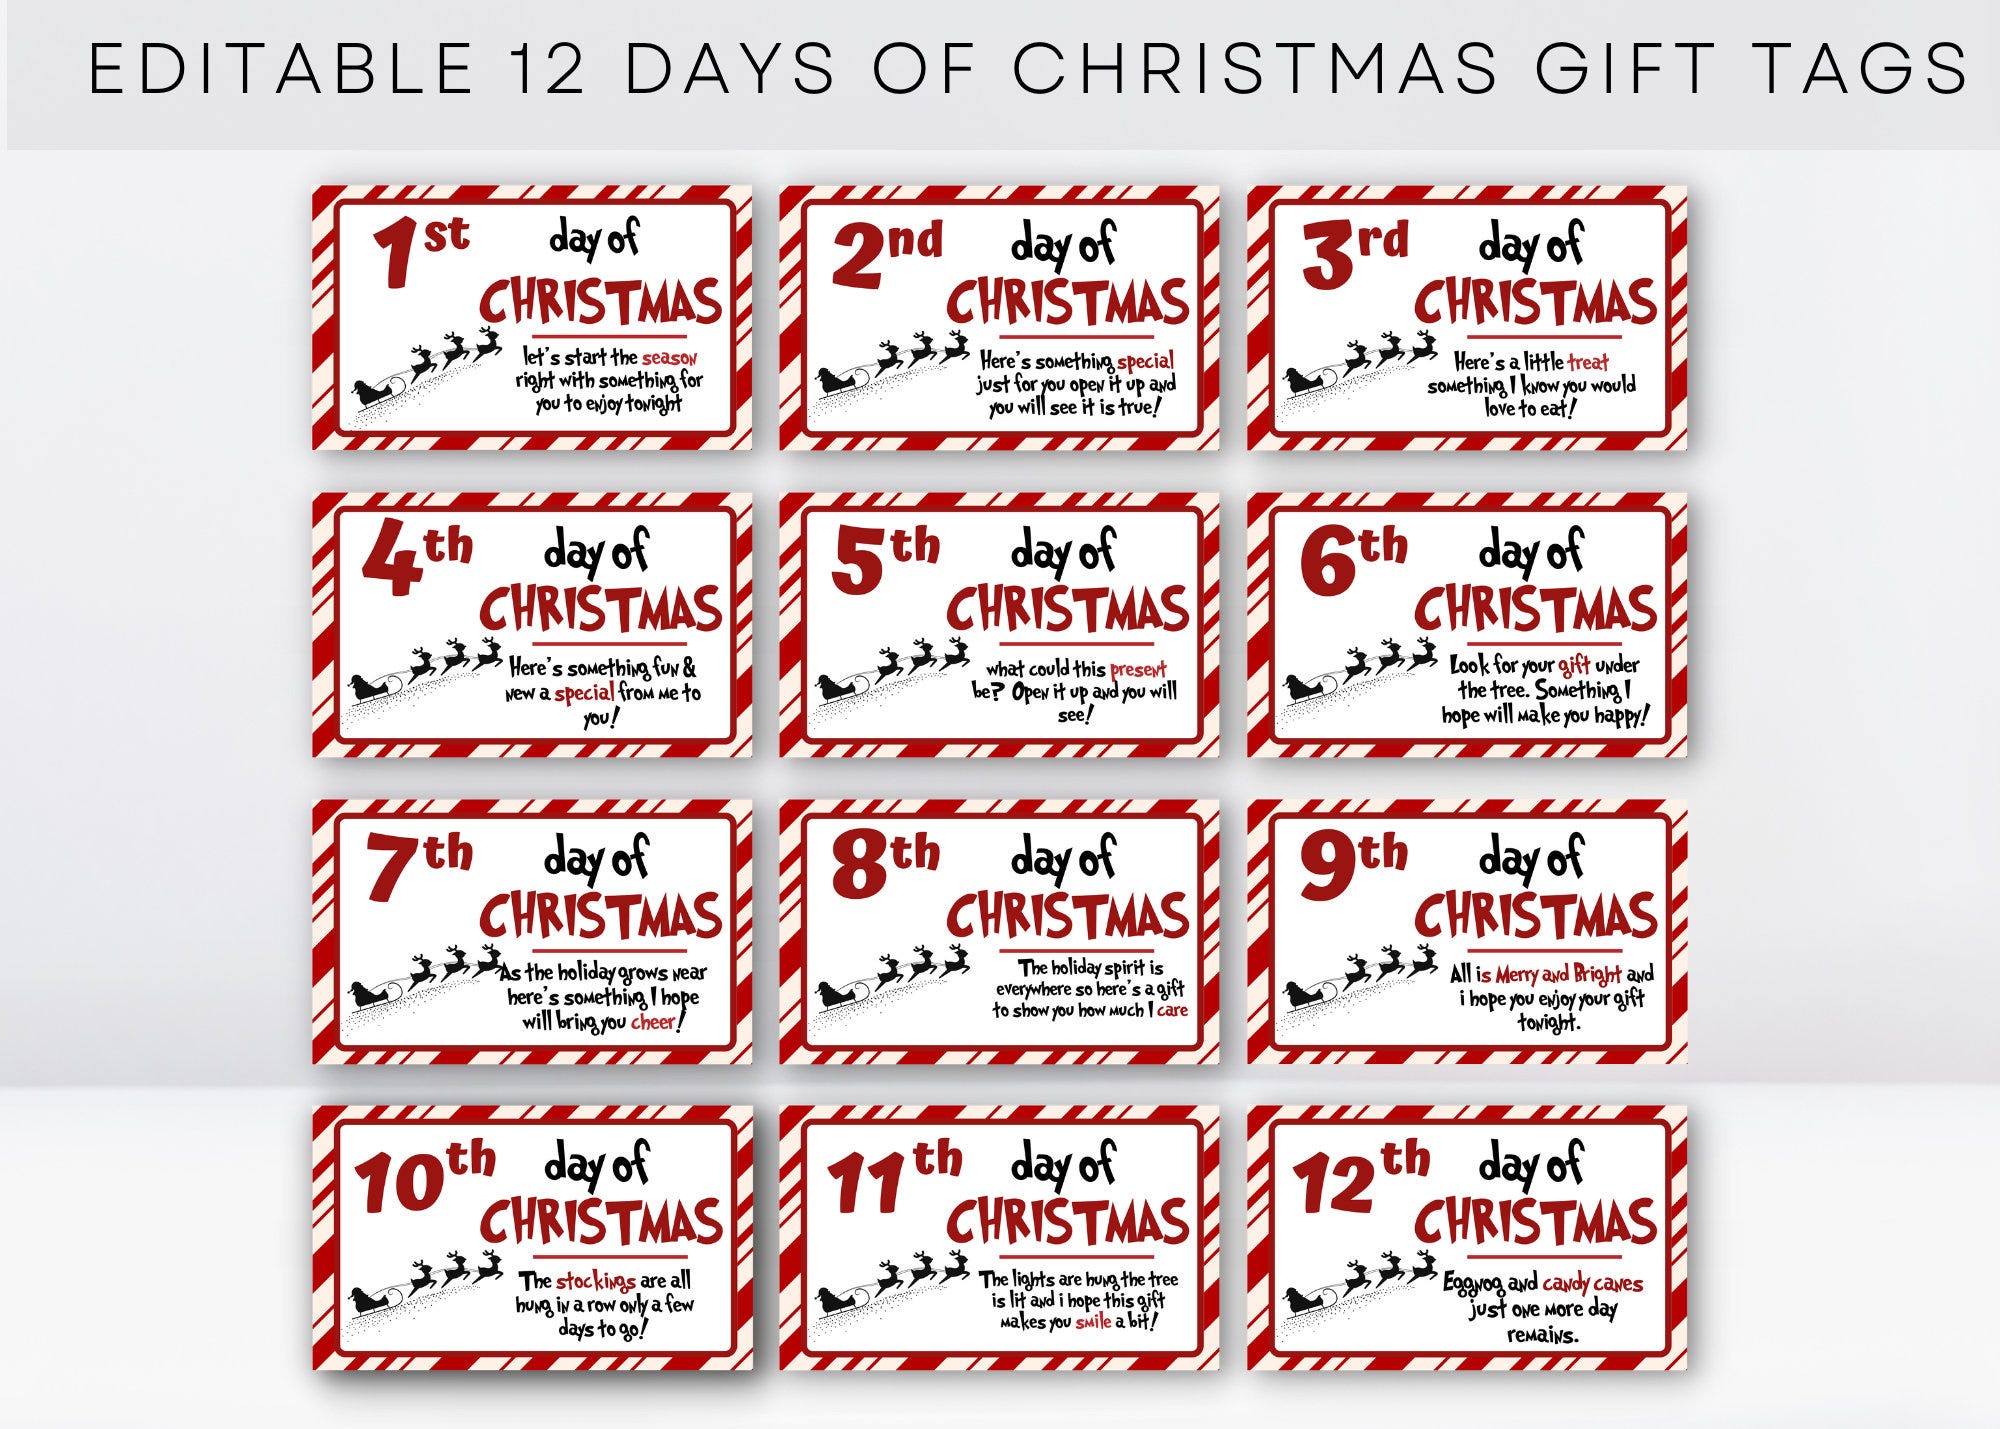 12 Days of Christmas Gift Tags, 12 Days of Christmas, Printable Christmas Cards, Holiday Tags for Gifts, Christmas Presents, Christmas Games